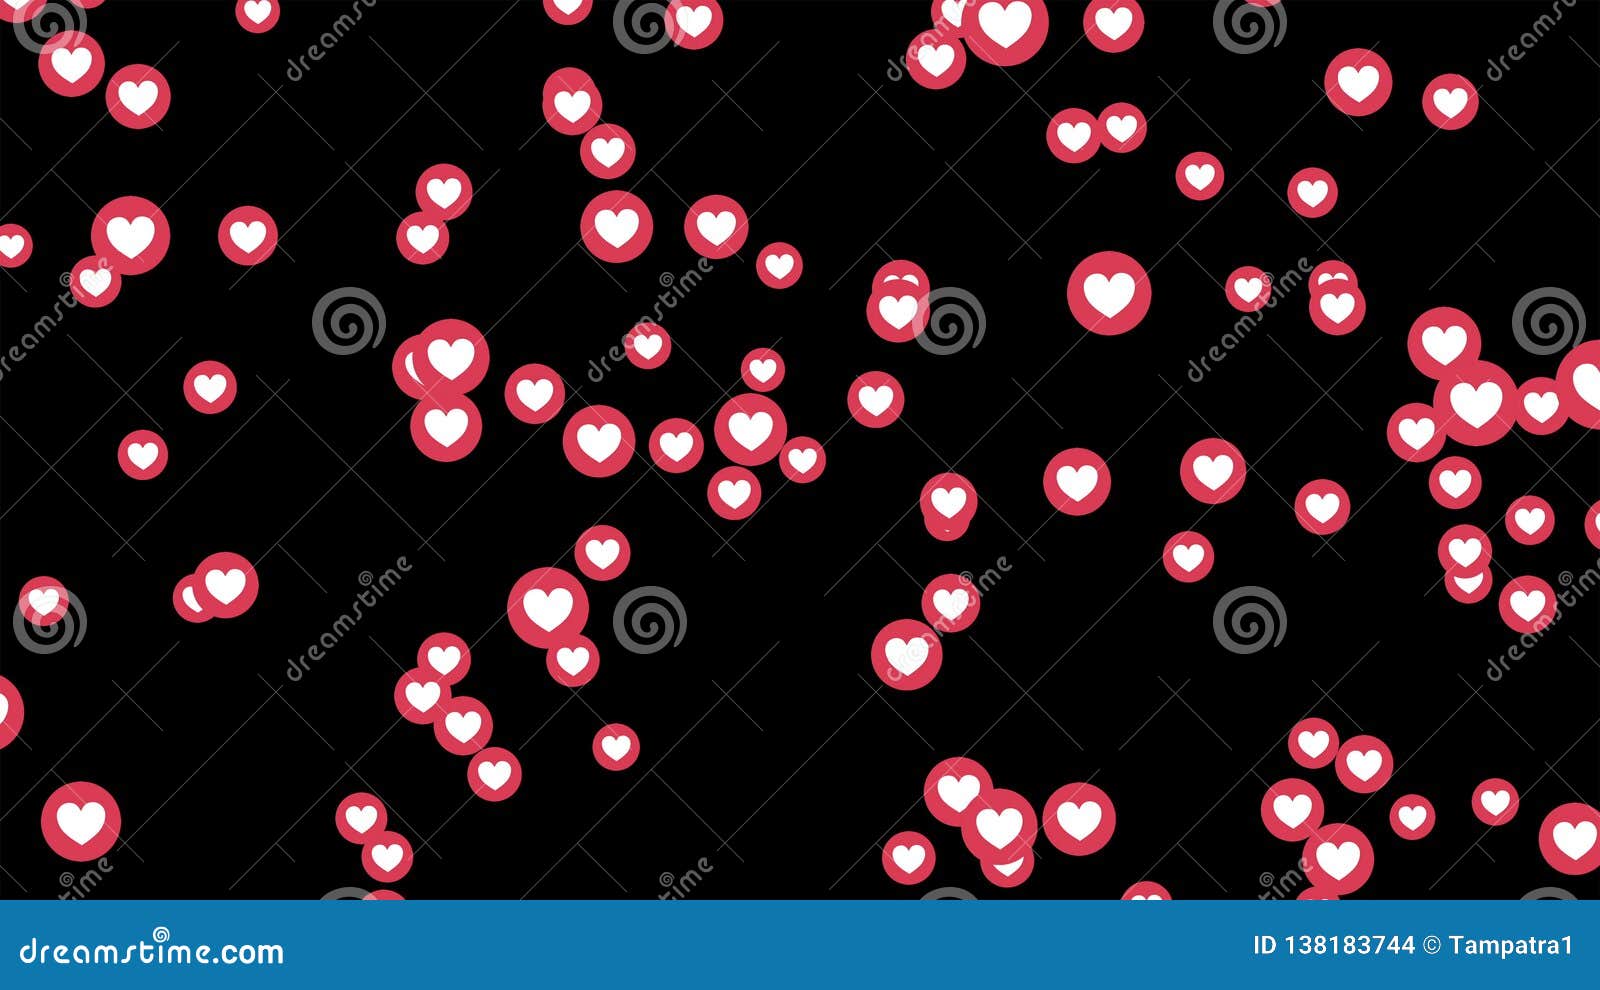 Facebook Heart Icons: Đừng bỏ lỡ hình ảnh này về biểu tượng trái tim trên Facebook! Hãy xem ngay để tận hưởng cảm giác ấm áp và đáng yêu từ chúng.